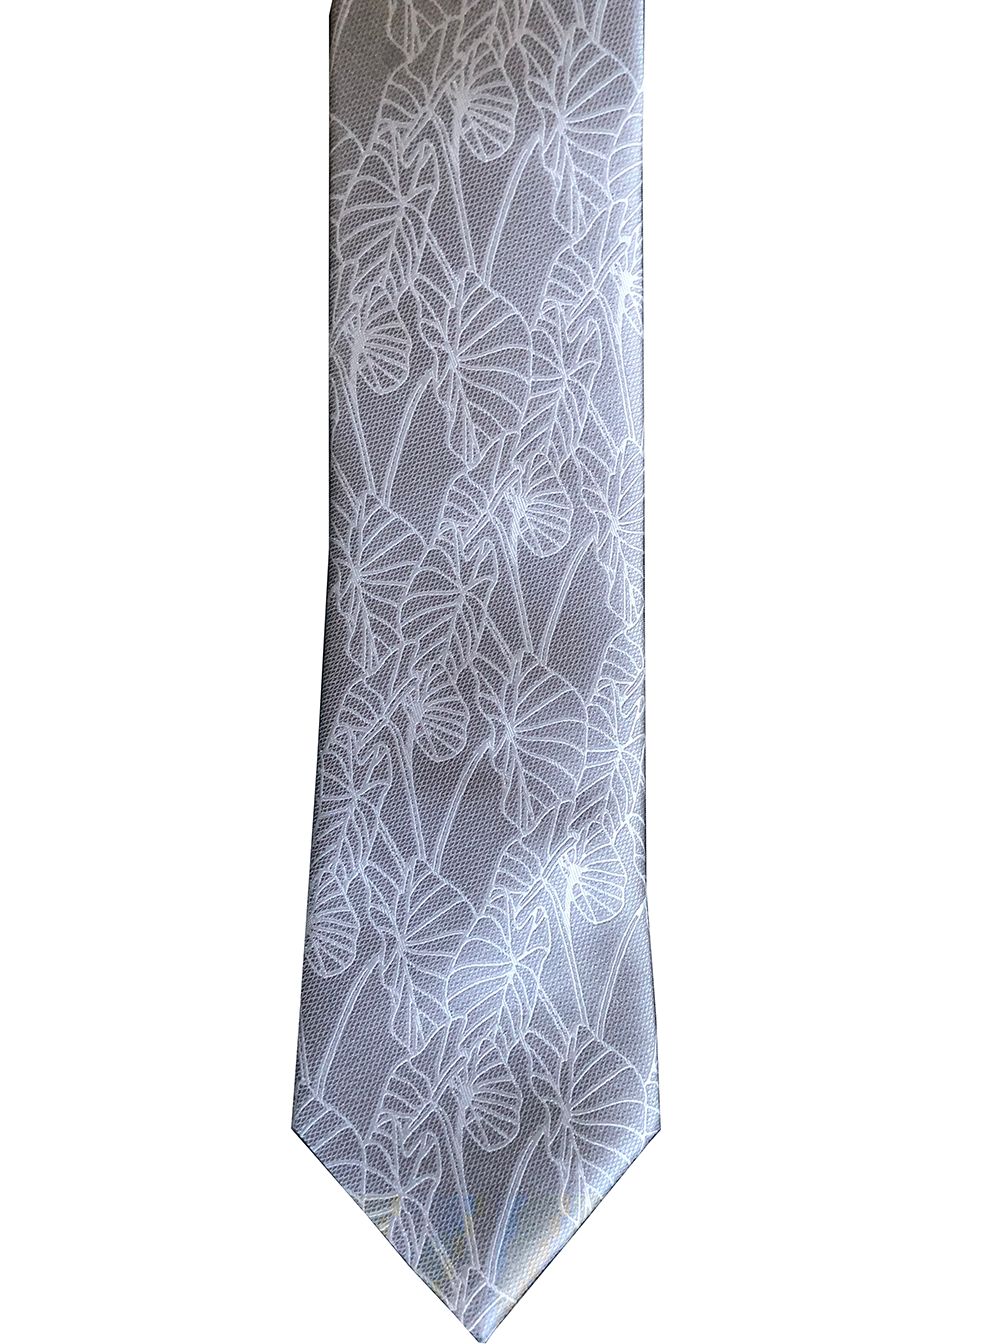 Kalo 2 Grey/White Modern Necktie